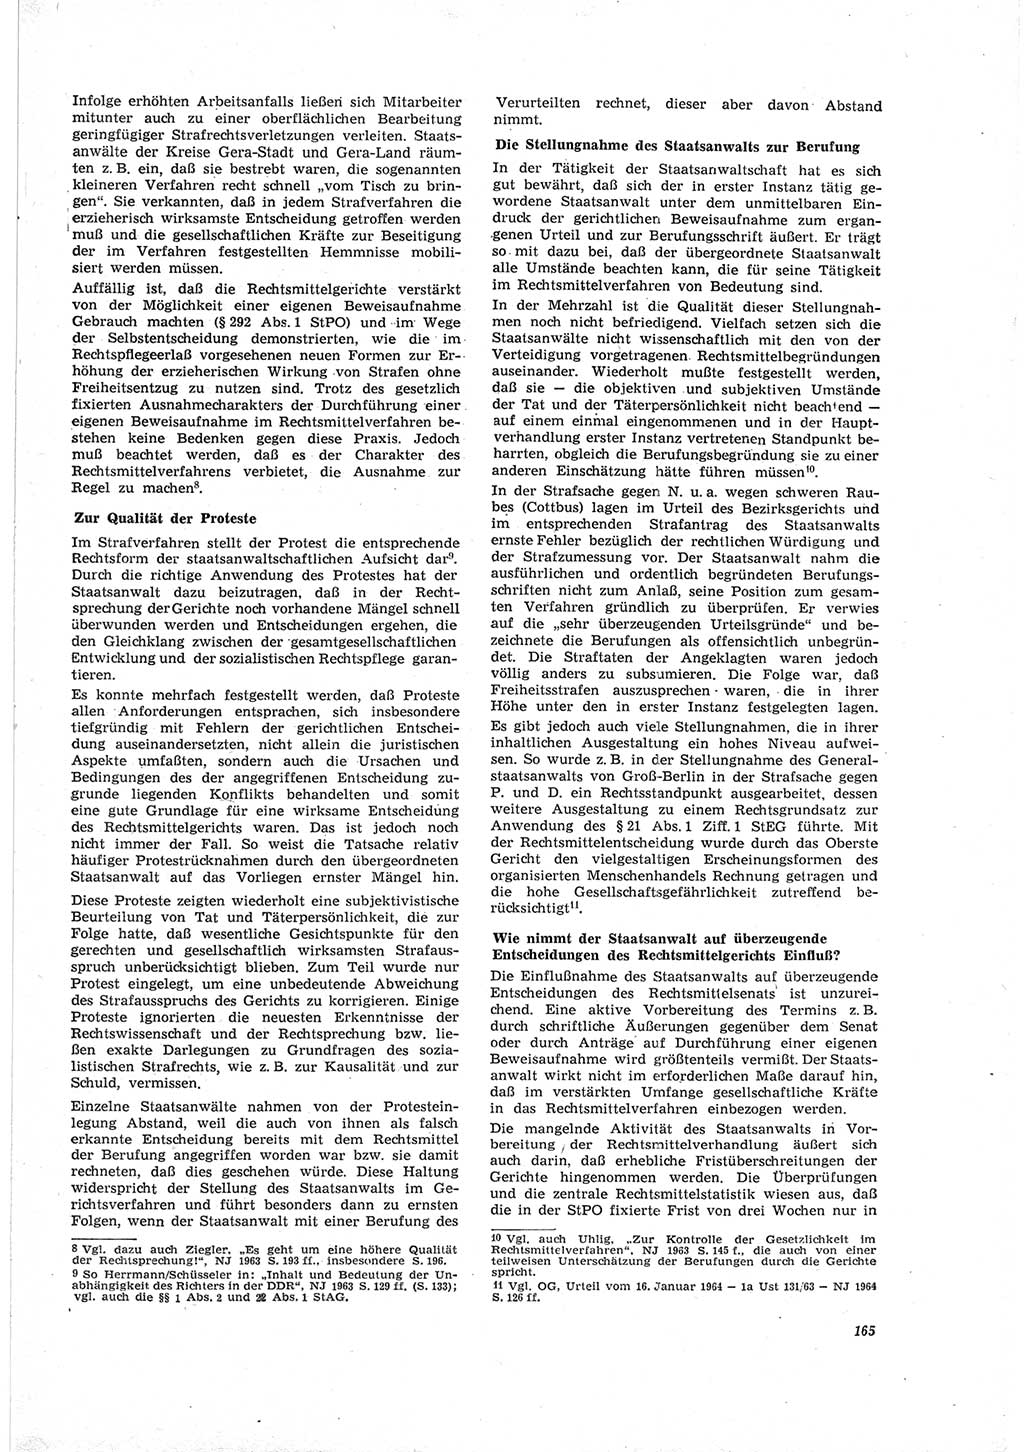 Neue Justiz (NJ), Zeitschrift für Recht und Rechtswissenschaft [Deutsche Demokratische Republik (DDR)], 19. Jahrgang 1965, Seite 165 (NJ DDR 1965, S. 165)